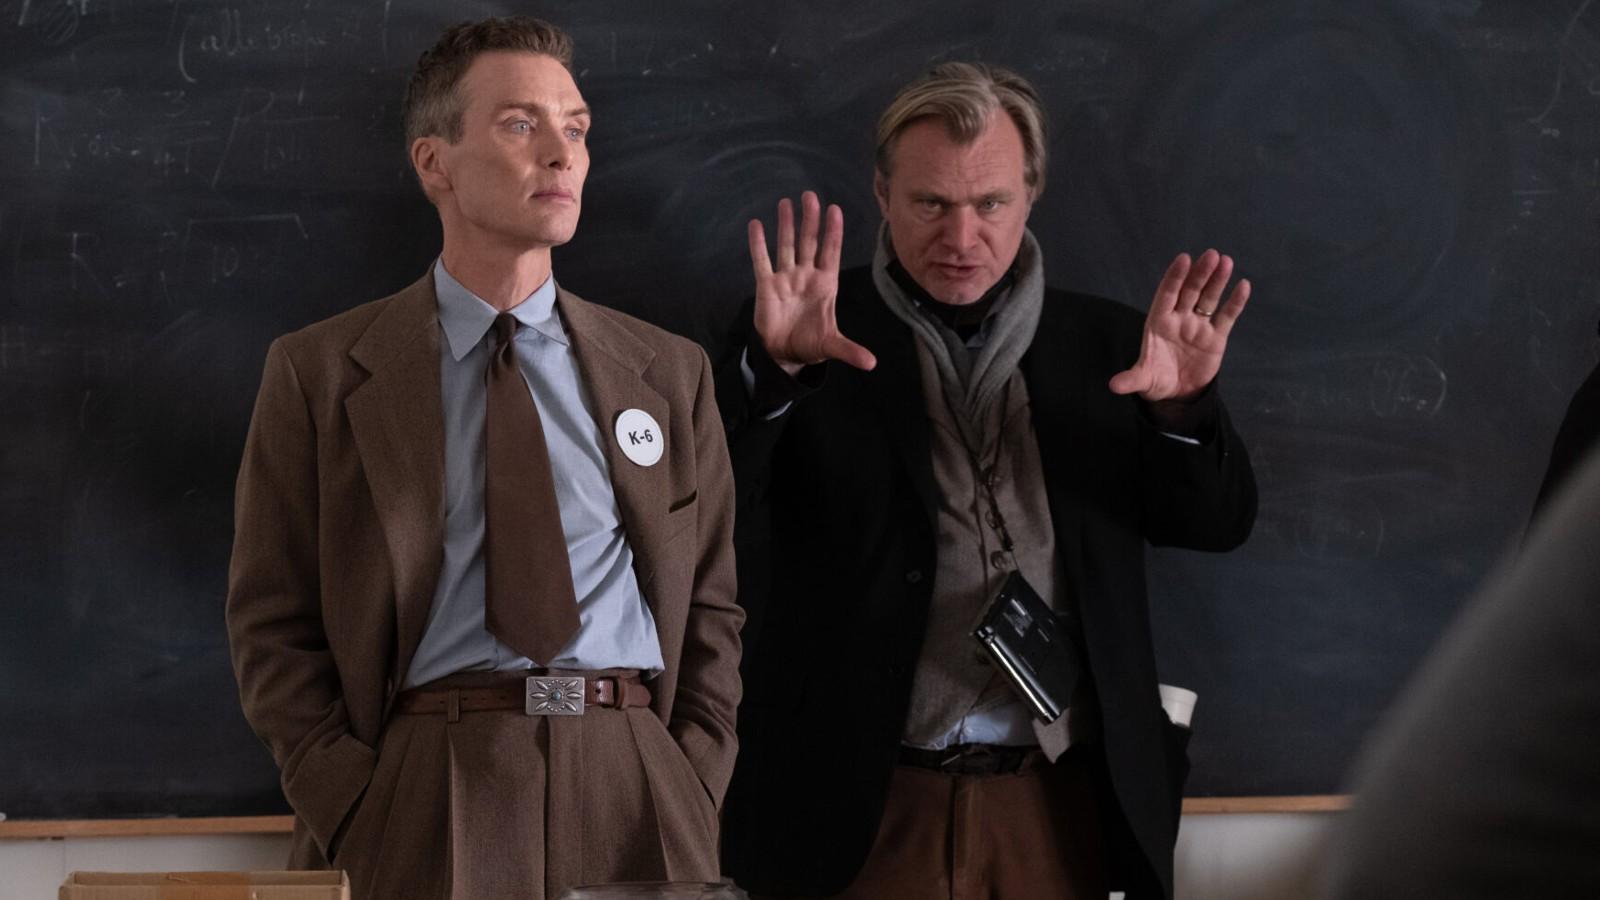 Christopher Nolan directing Cillian Murphy in Oppenheimer.